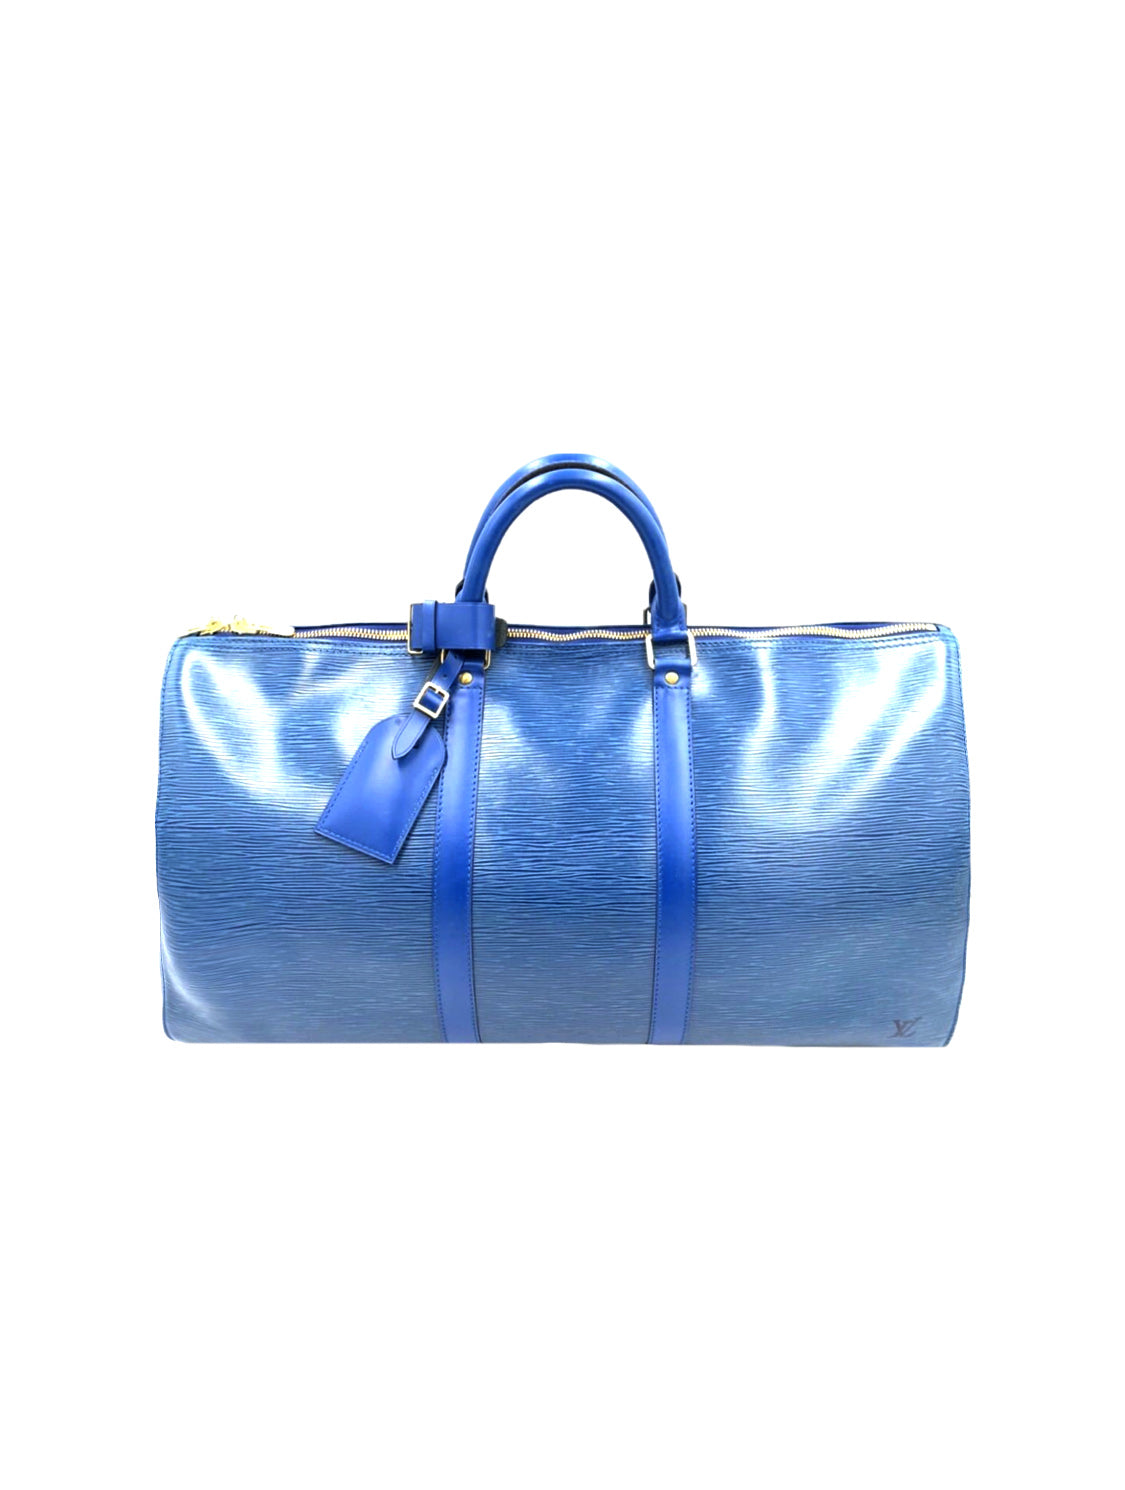 Louis Vuitton 2000s Epi Leather Blue Boston Bag